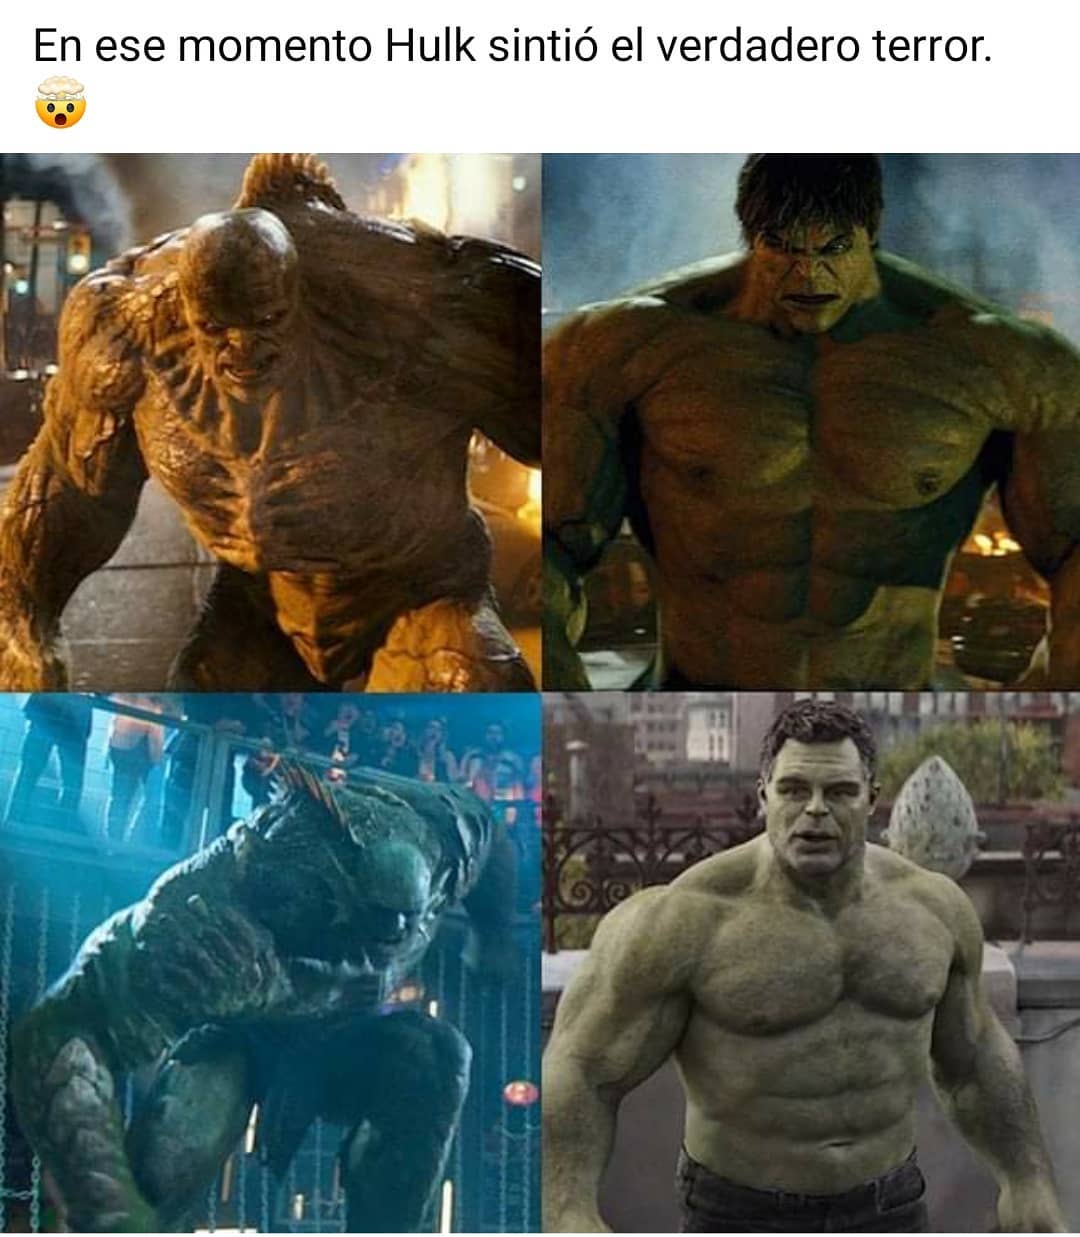 En ese momento Hulk sintió el verdadero terror.